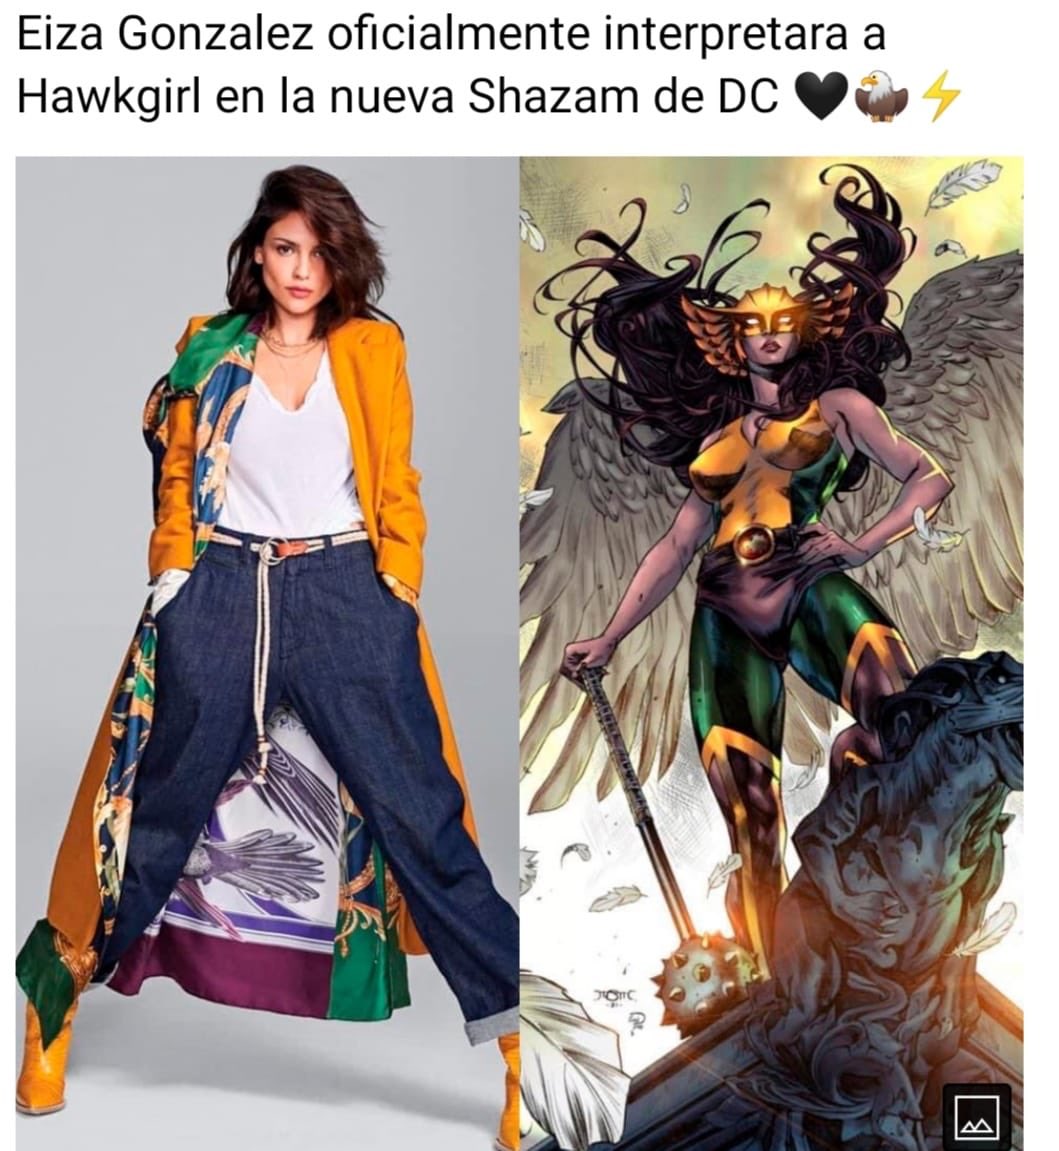 La realidad detrás del supuesto ingreso de Eiza González al Universo DC como “Hawkgirl”